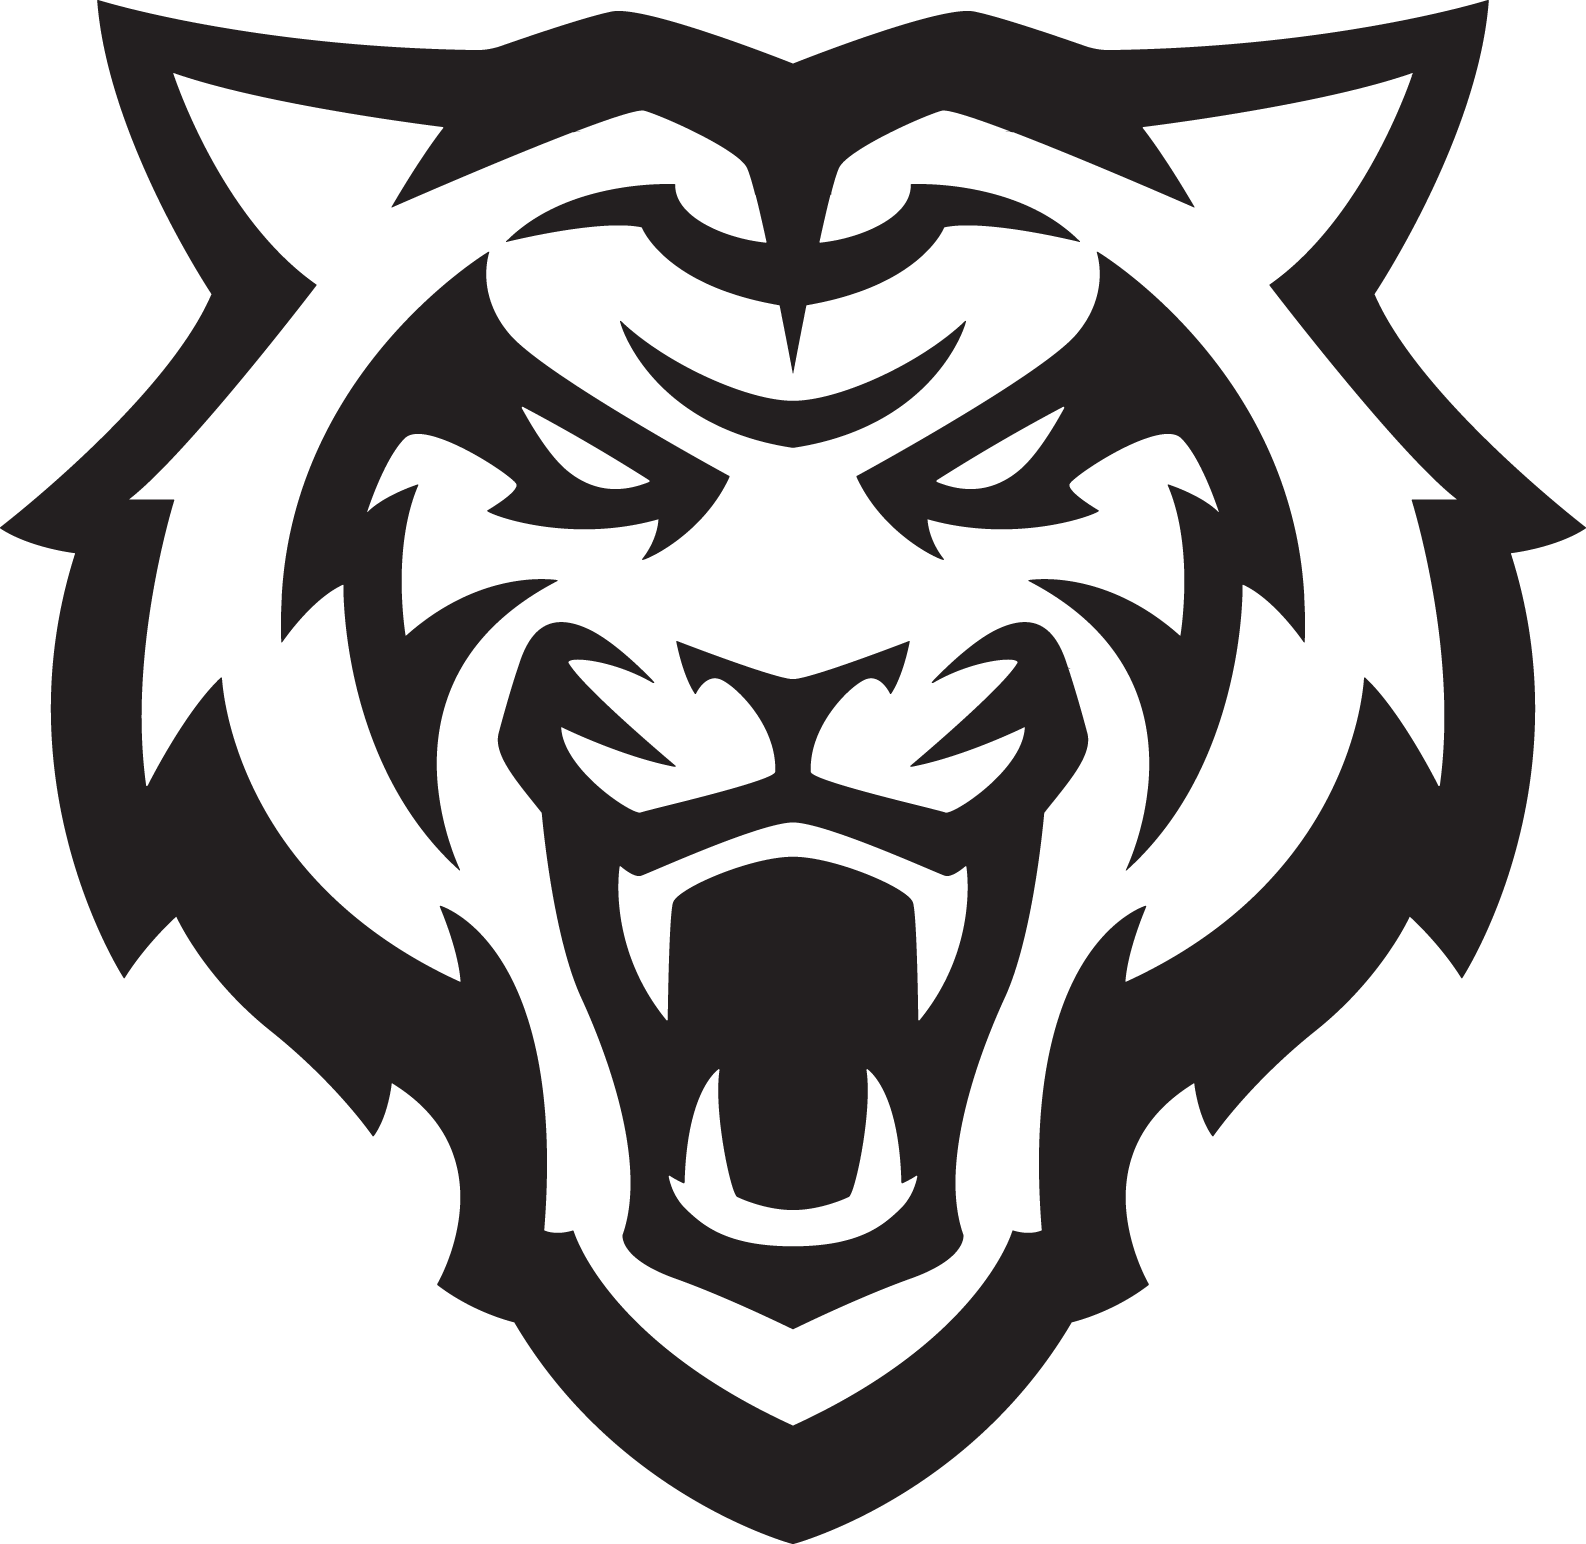 Black Tiger Logo